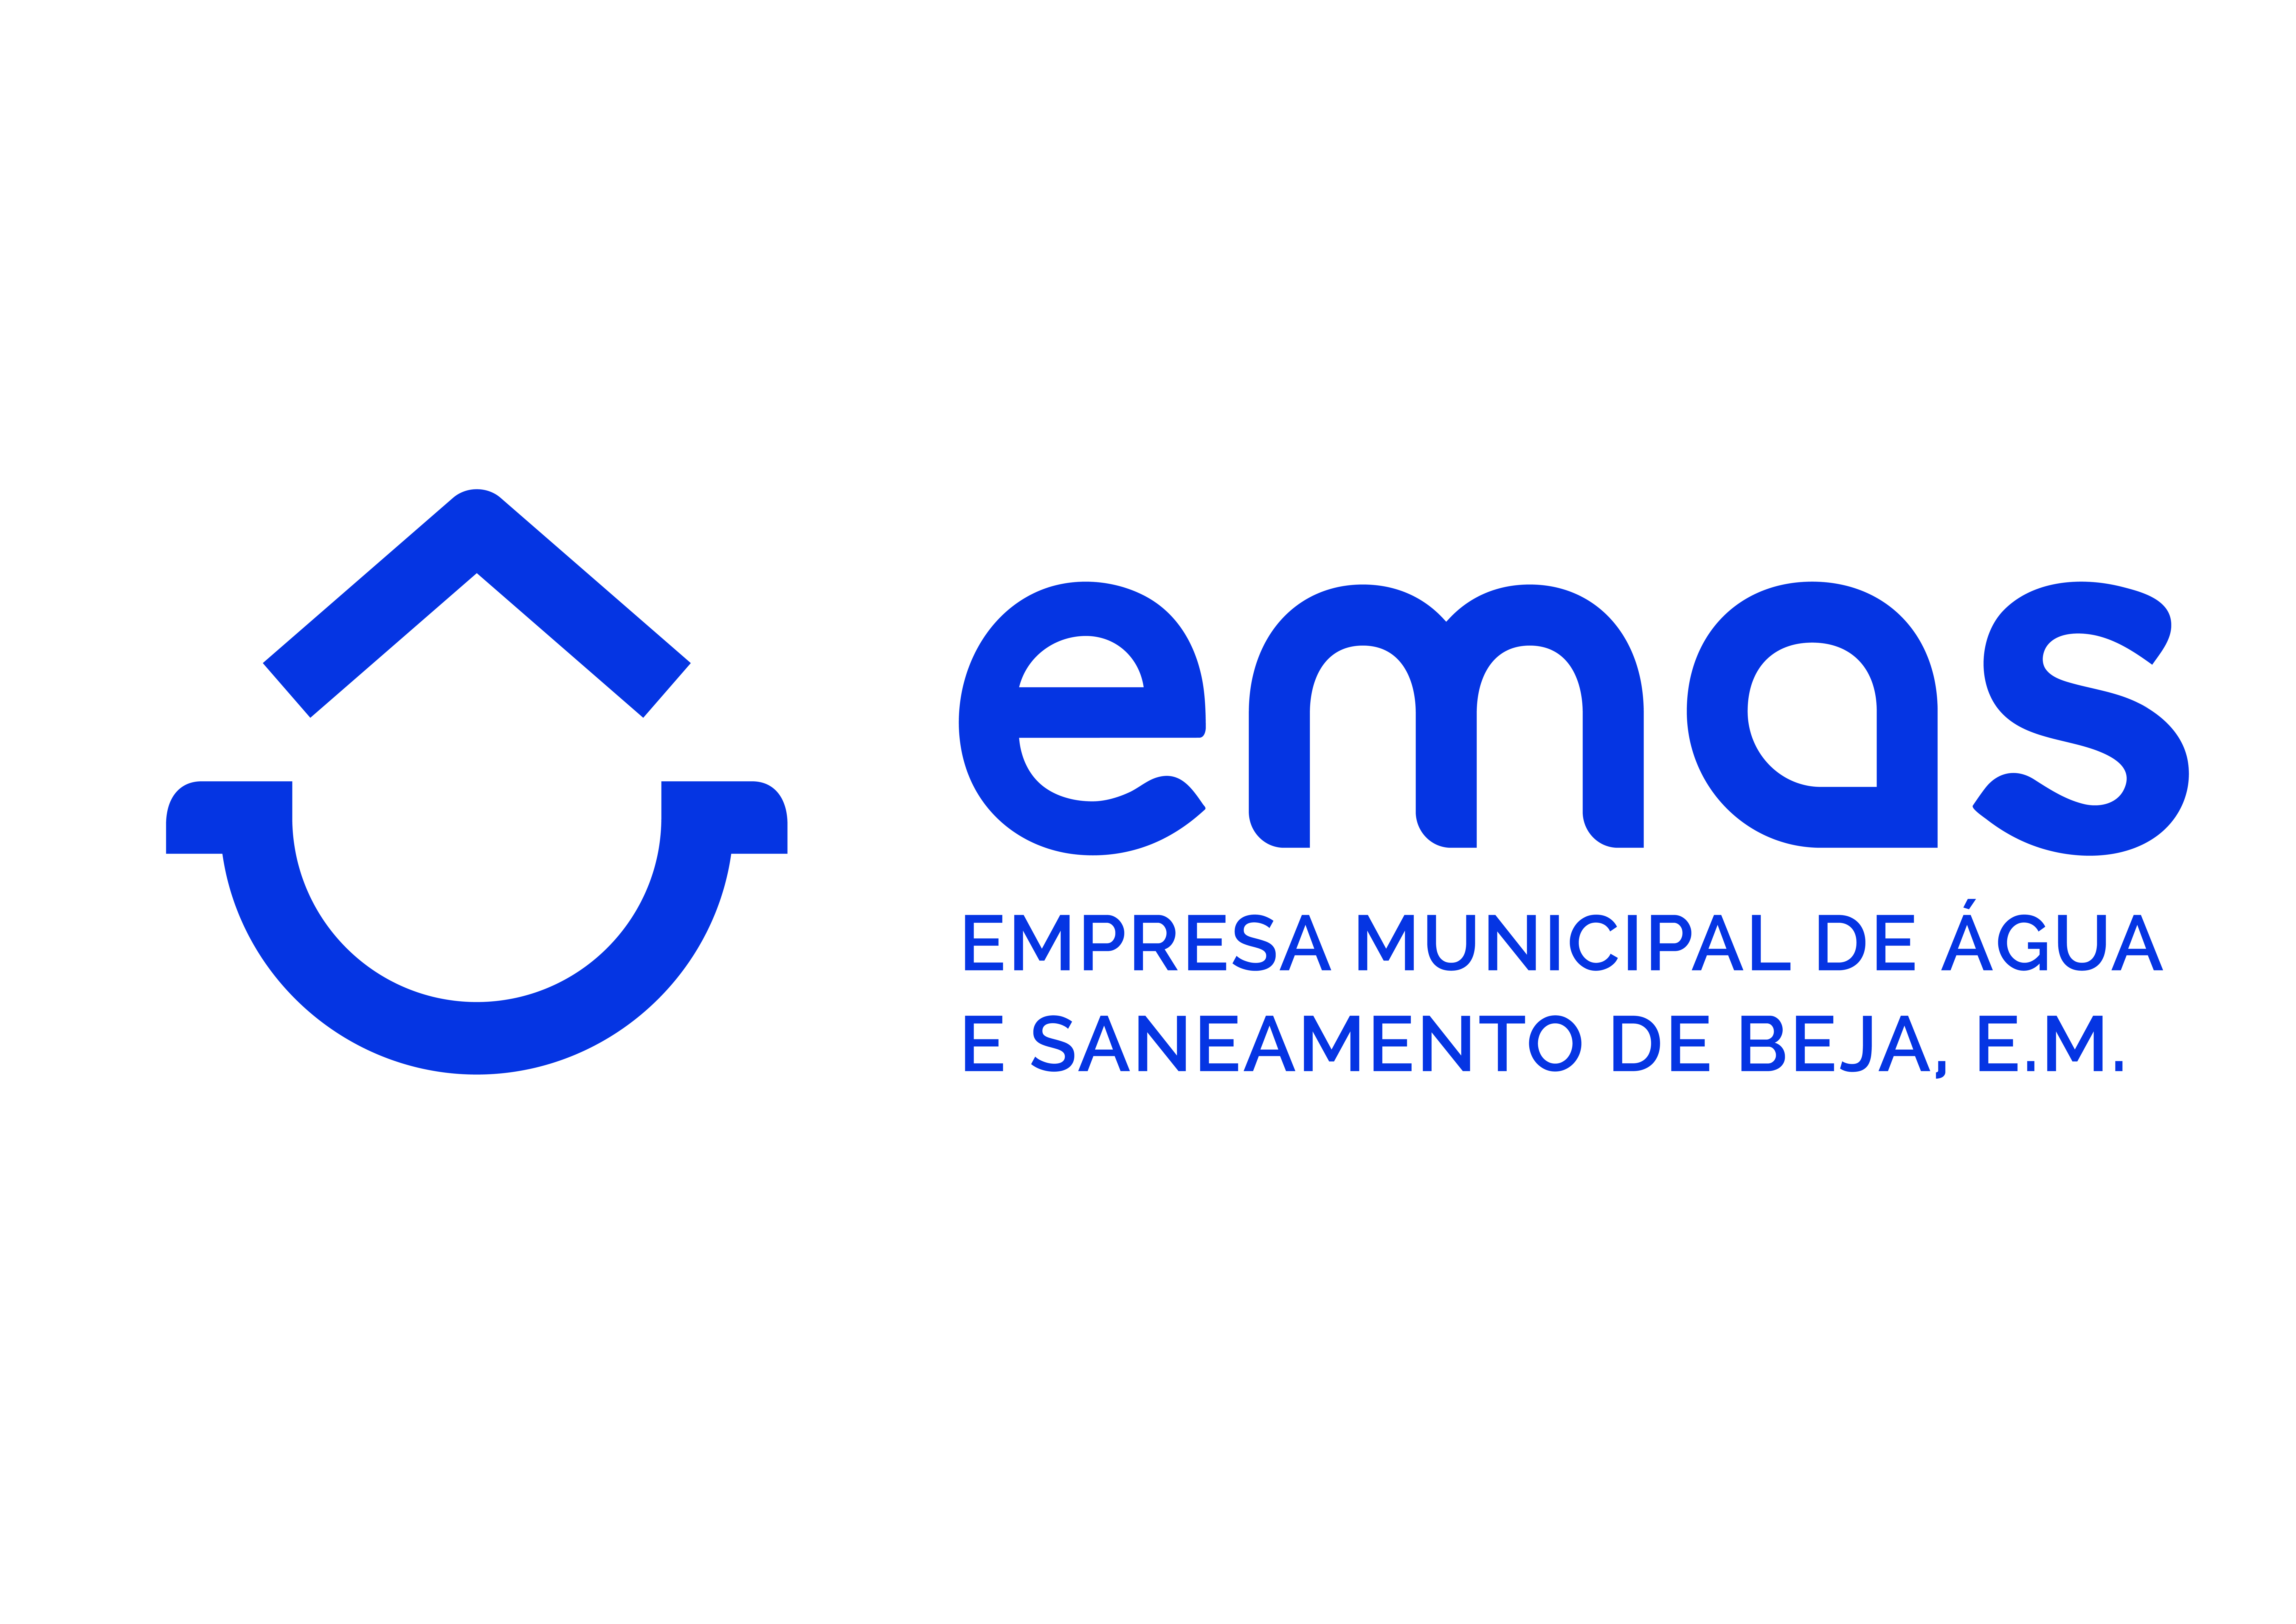 EMAS - Empresa Municipal de Água e Saneamento de Beja, E.M.